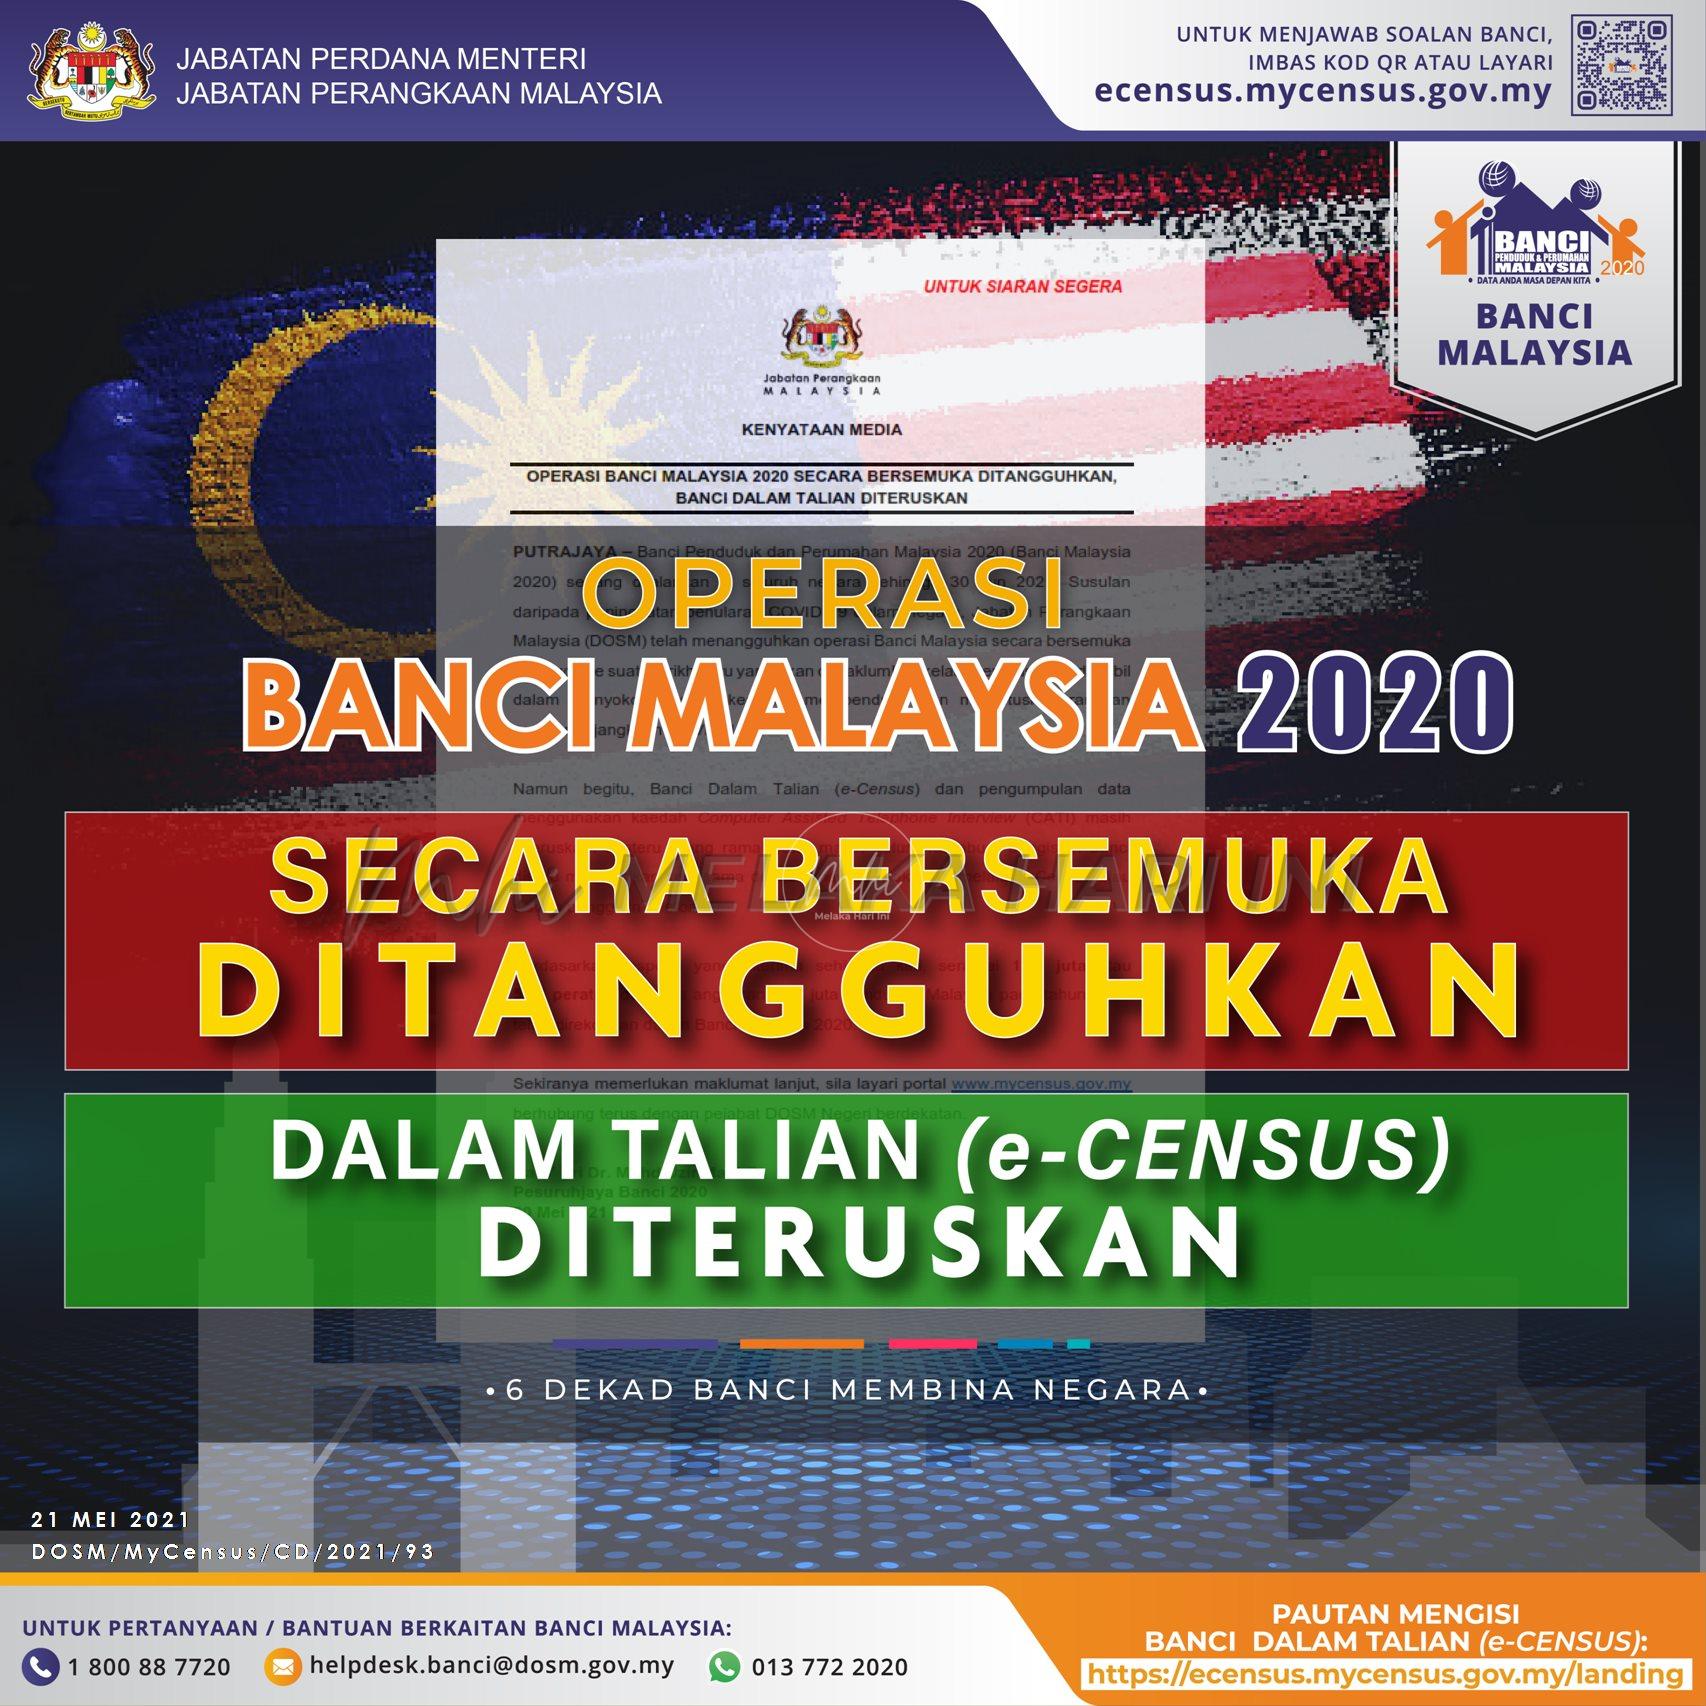 Banci Malaysia 2020 secara bersemuka ditangguhkan